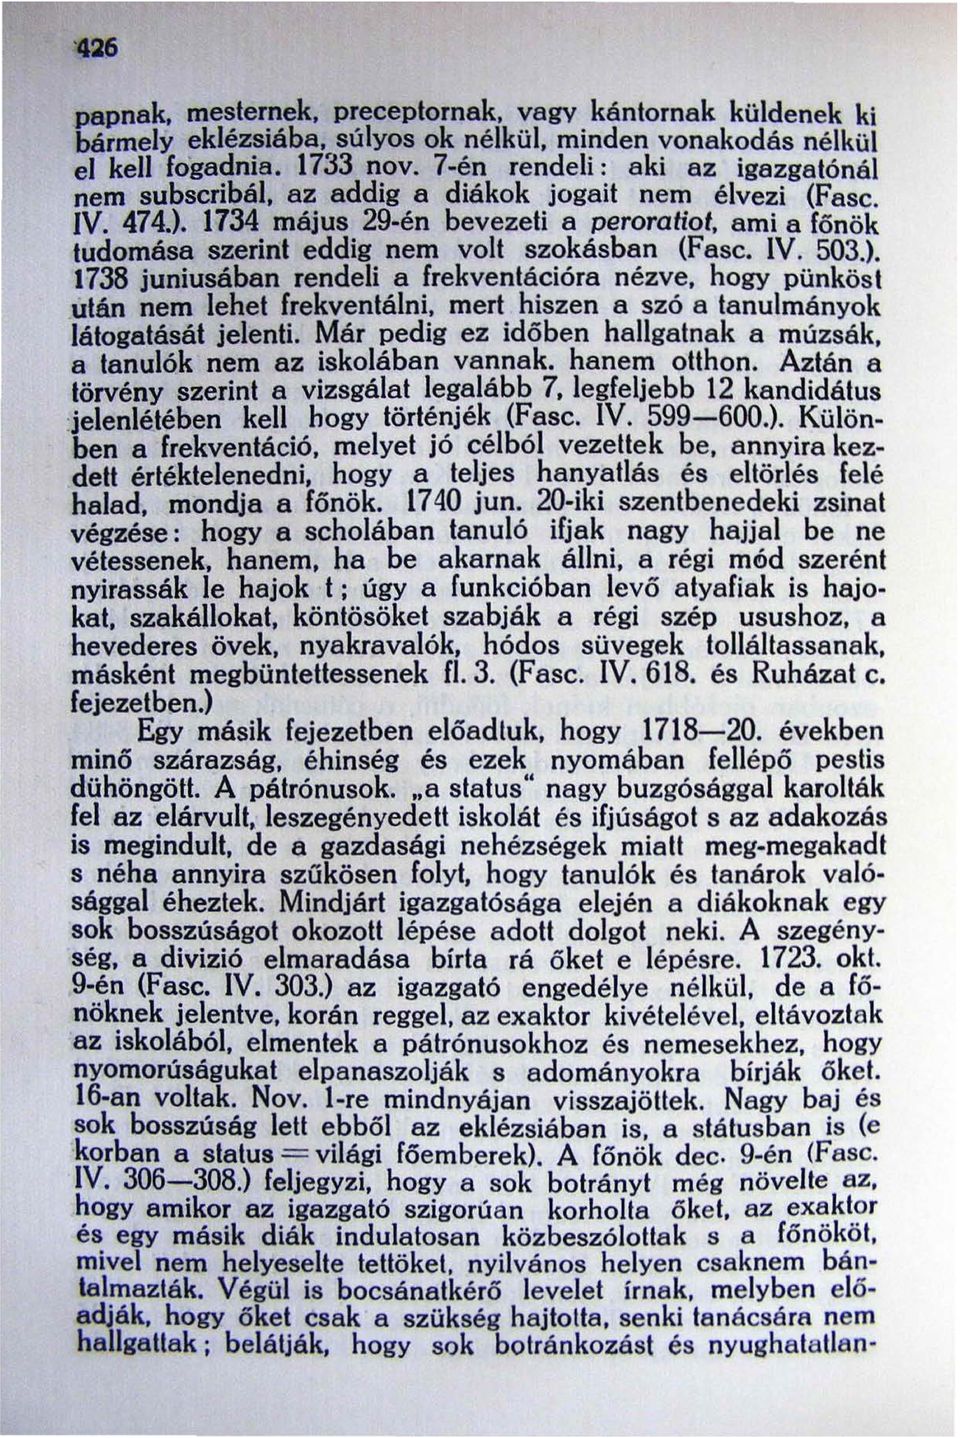 1734 május 29-én bevezeti a peroratiot, ami a főnök tudomása szerint eddig nem volt szokásban (Fasc. IV. 503.).